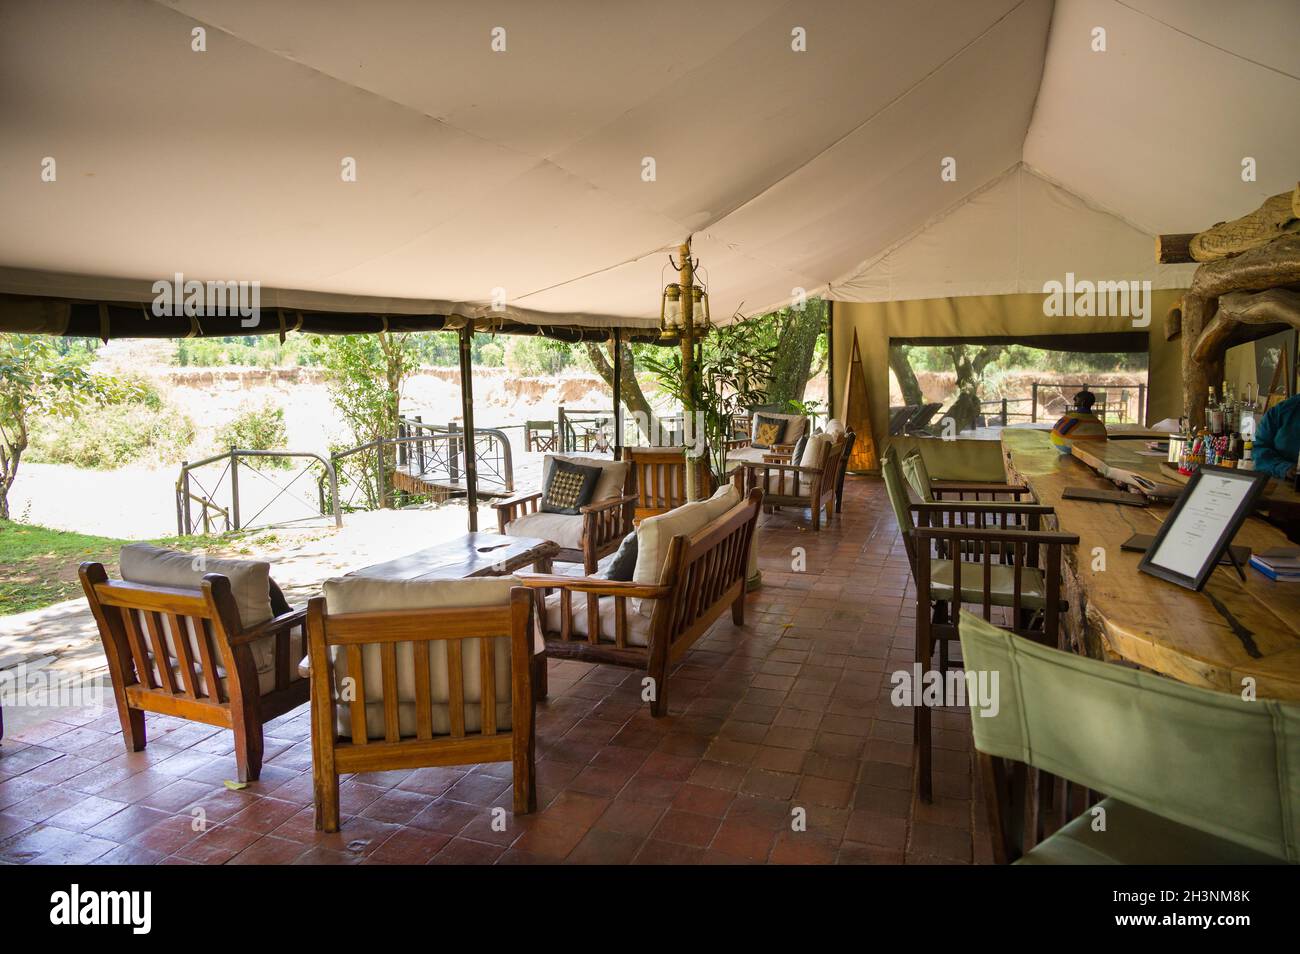 Governors Camp salle de bar à l'intérieur pendant un après-midi ensoleillé, Masai Mara, Kenya Banque D'Images